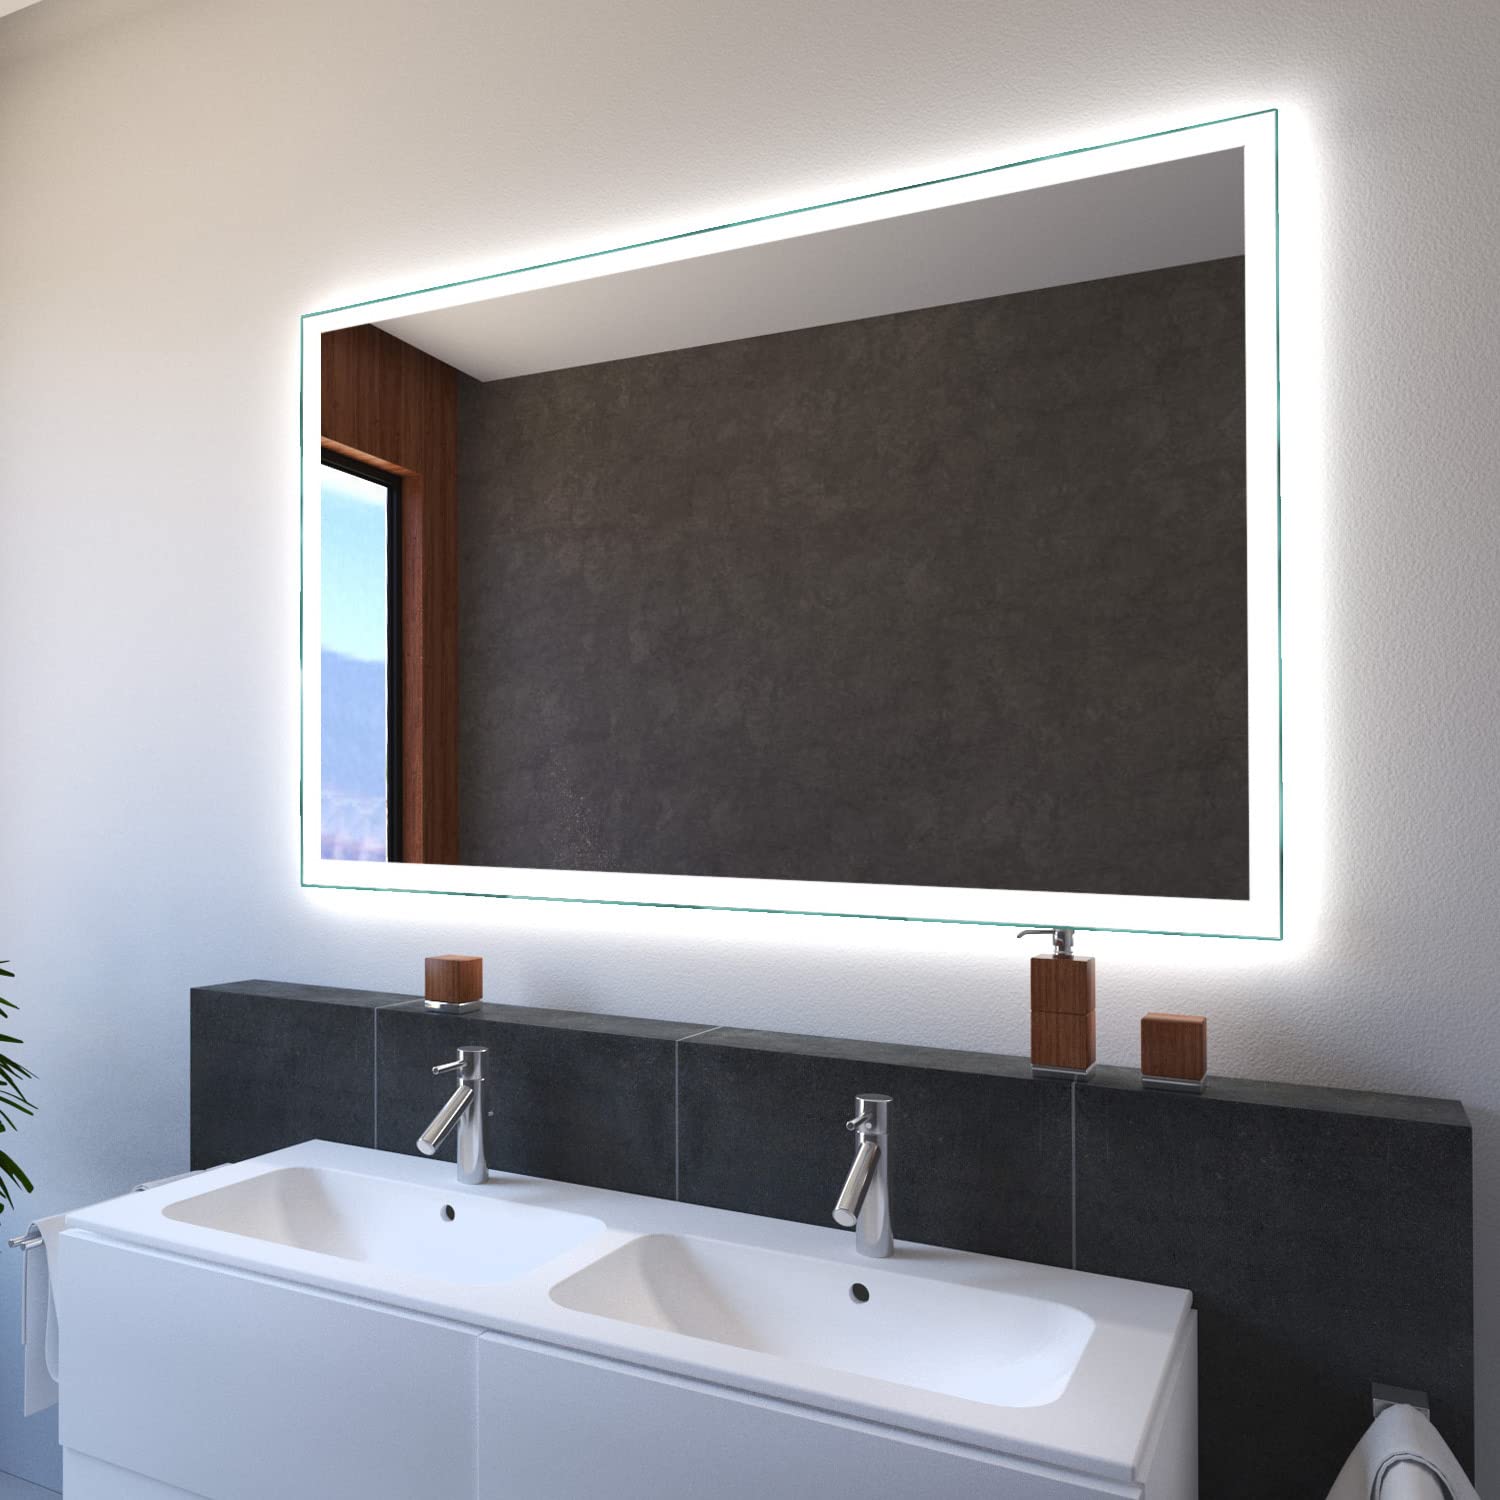 SARAR Wandspiegel mit LED-Beleuchtung 200x60cm Made in Germany Designo MA4110 Badspiegel Spiegel mit Beleuchtung Badezimmerspiegel nach-auf Maß